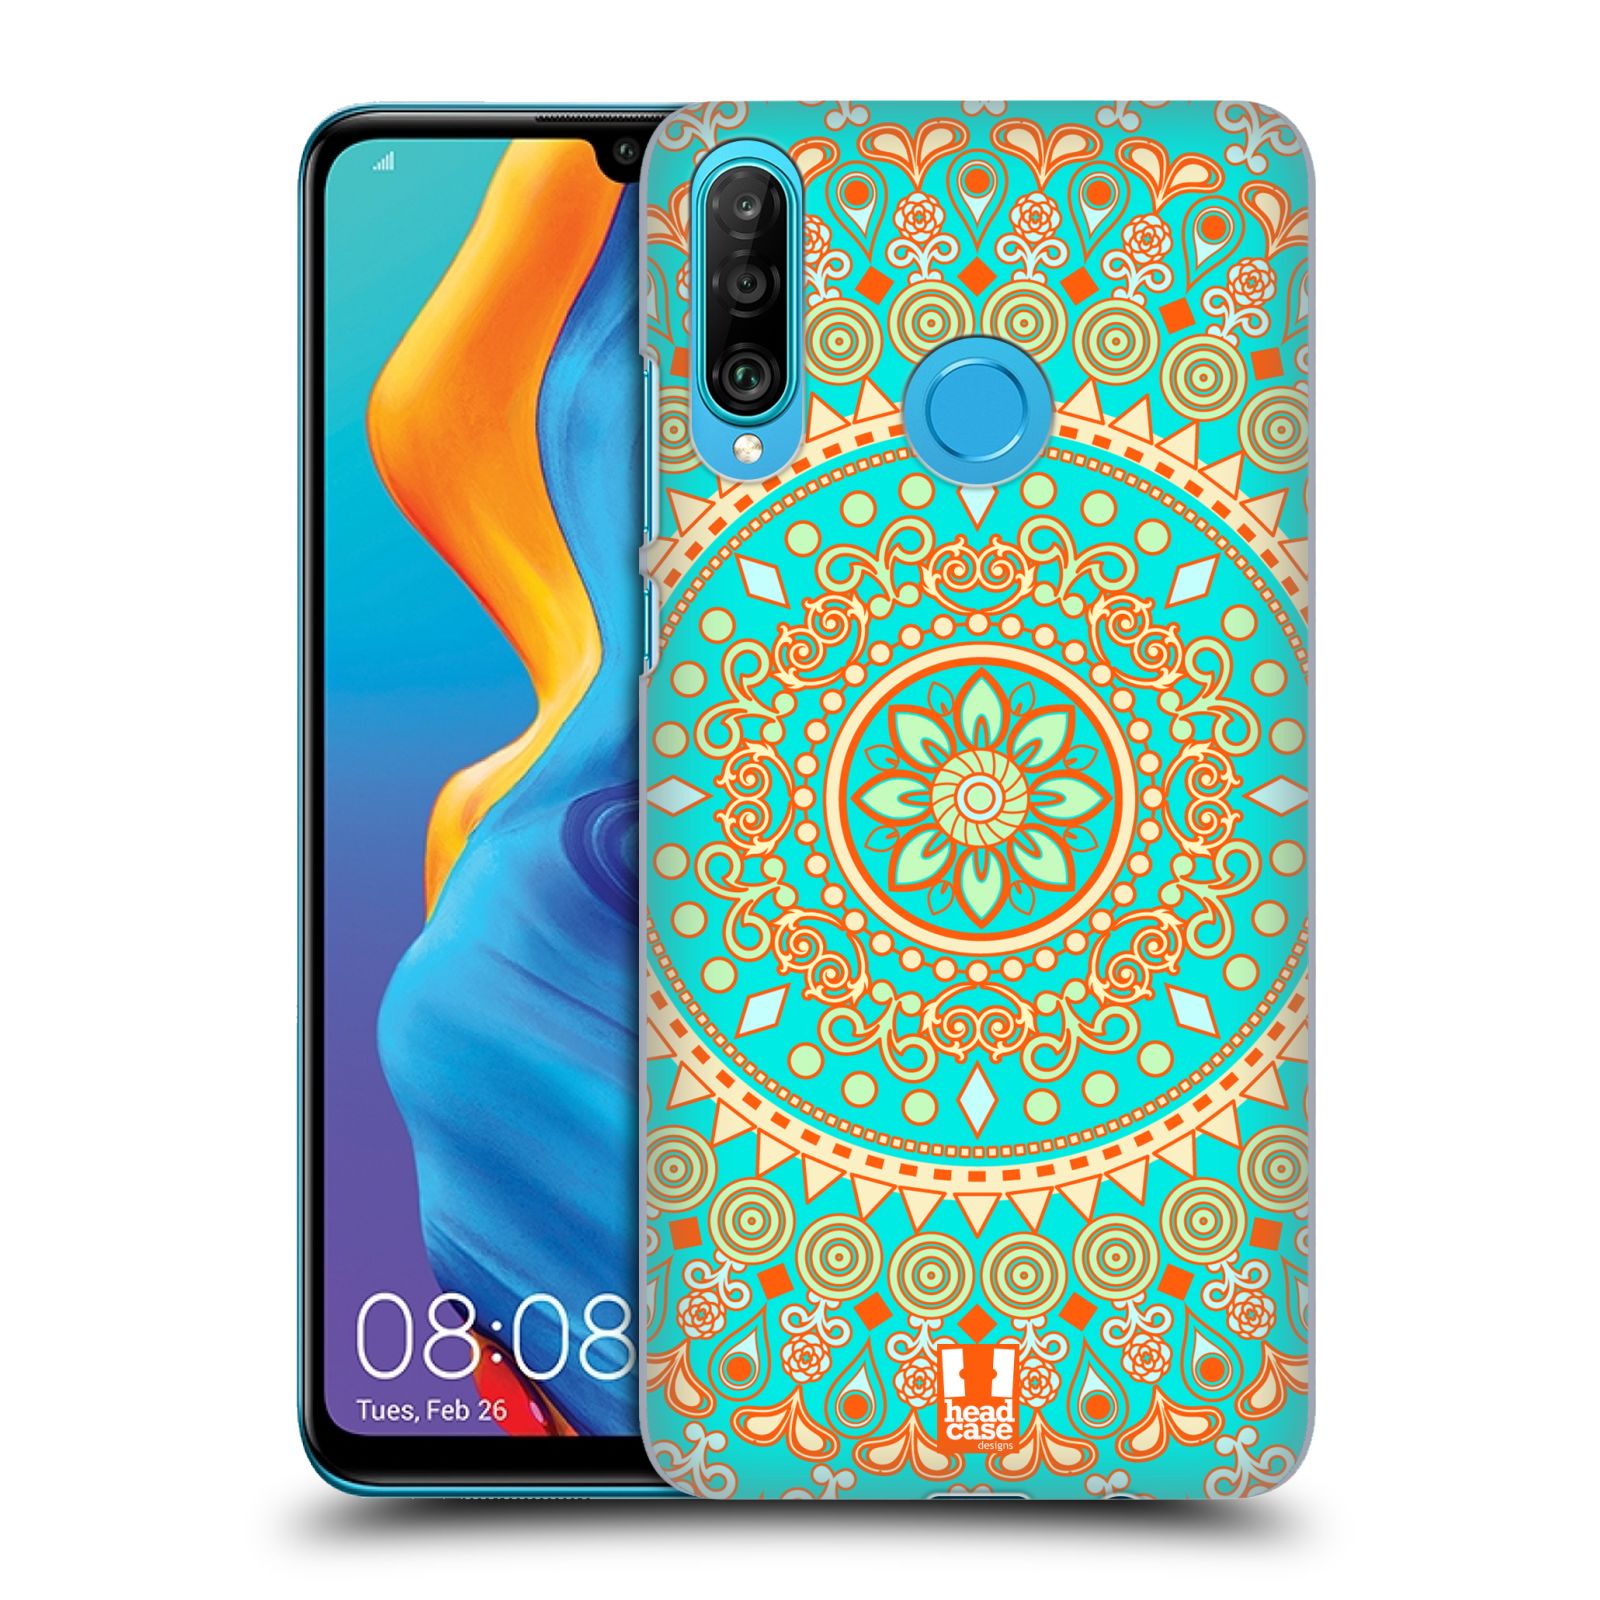 Pouzdro na mobil Huawei P30 LITE - HEAD CASE - vzor Indie Mandala slunce barevný motiv TYRKYSOVÁ, ZELENÁ